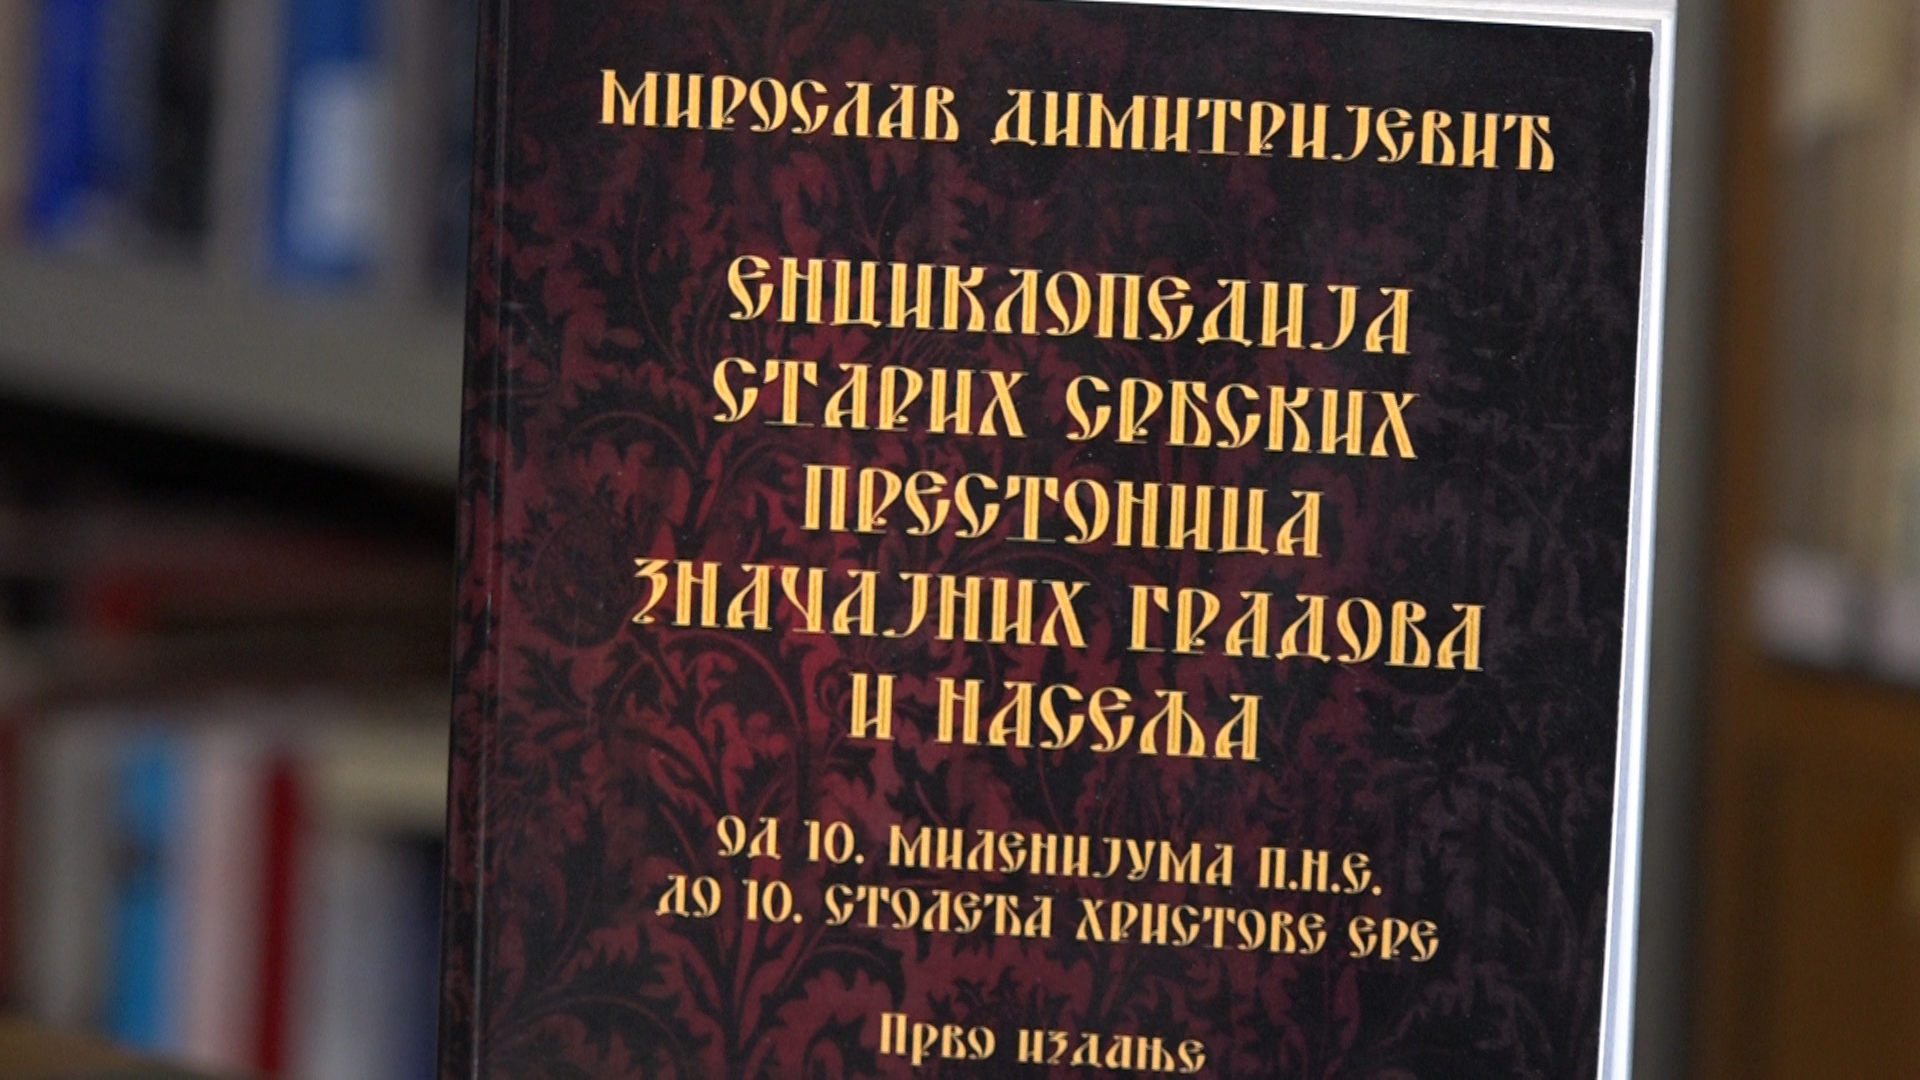 Nove dve enciklopedije Miroslava Dimitrijevića